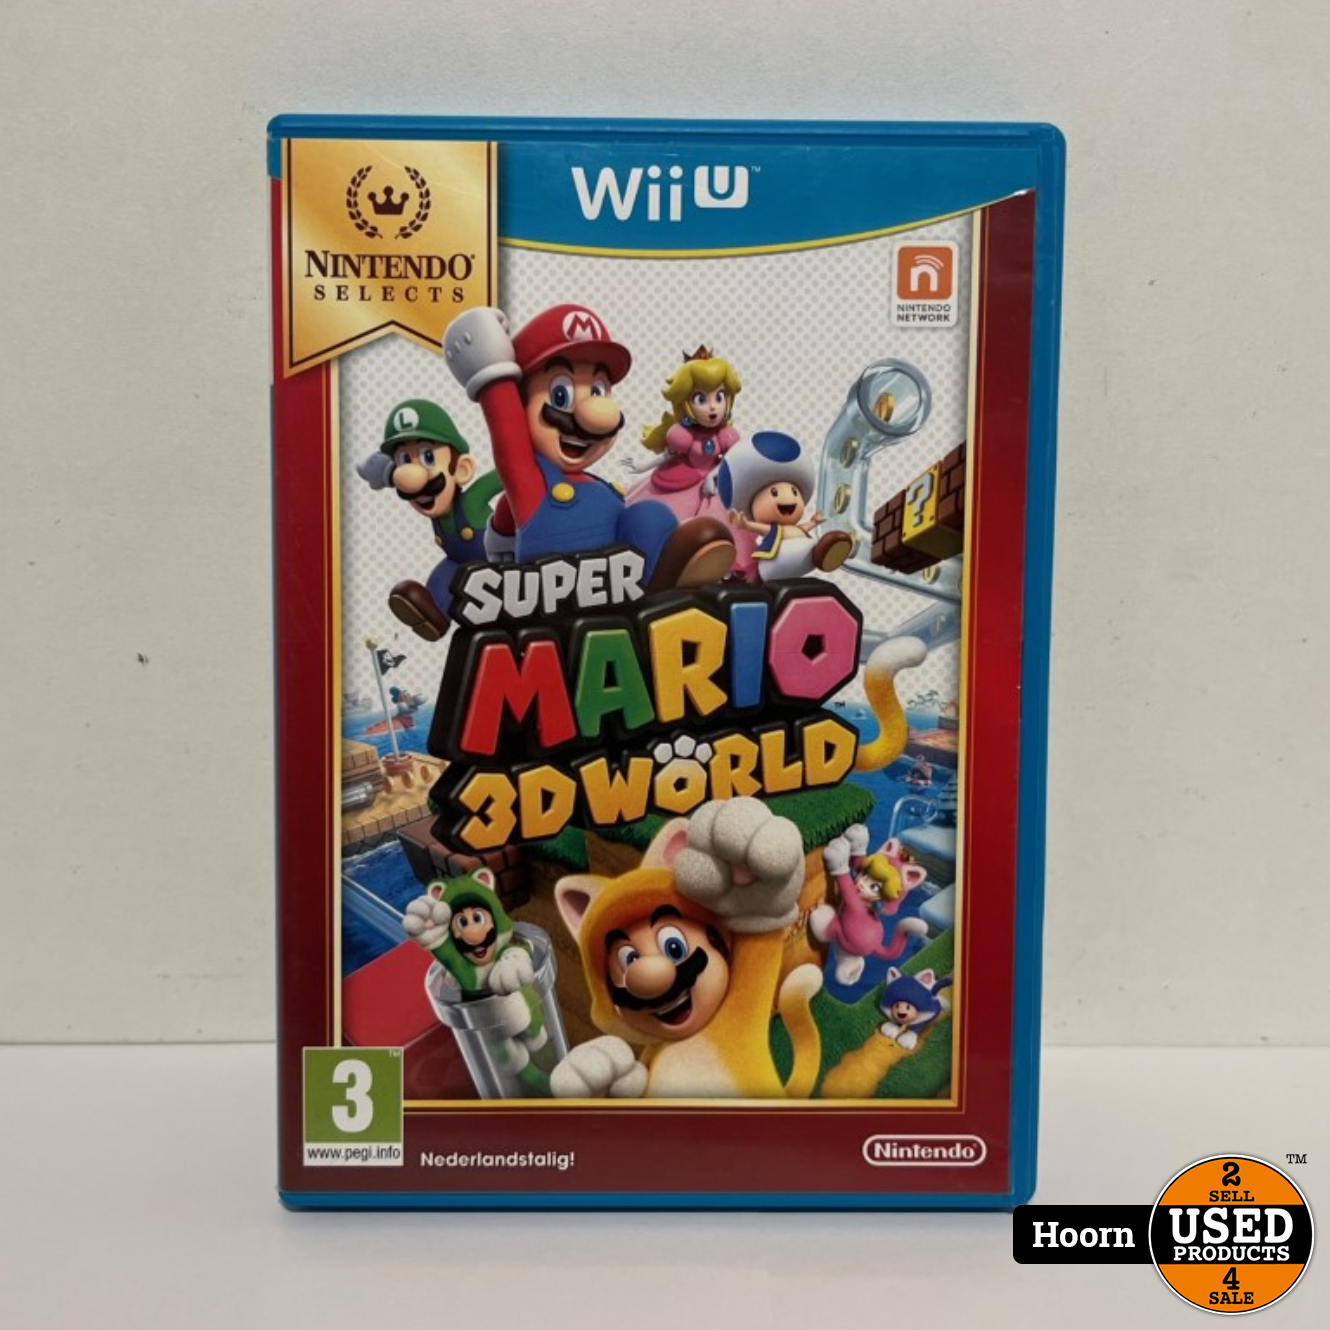 wetenschappelijk financiën diefstal Nintendo Wii U Game: Super Mario 3D World - Used Products Hoorn